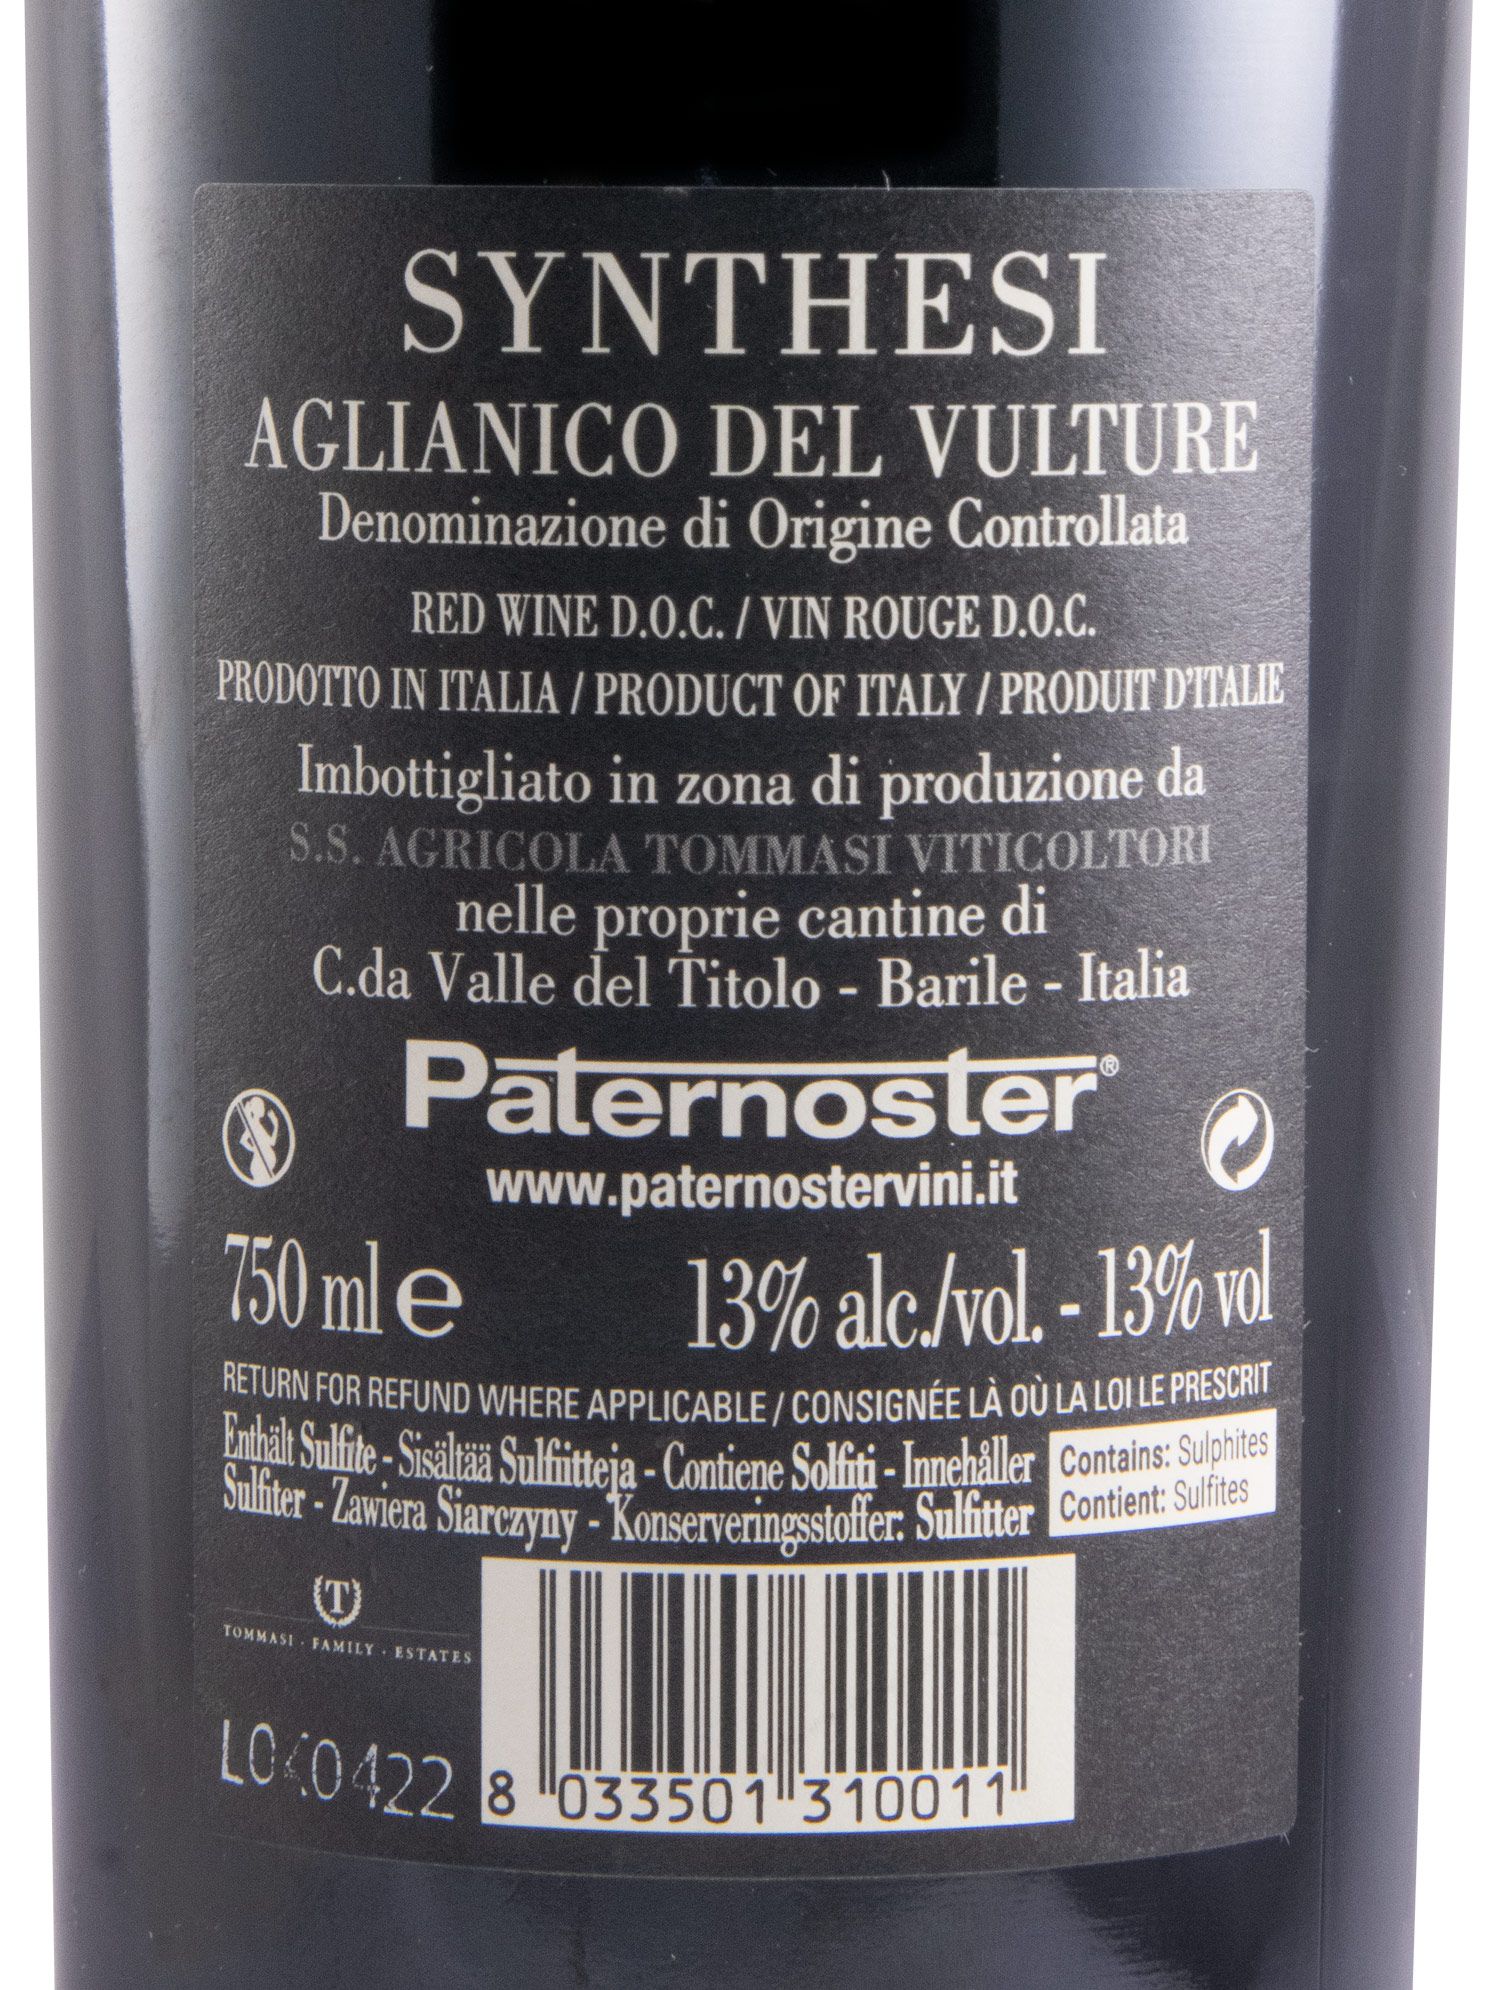 2018 Paternoster Synthesi Aglianico del Vulture tinto